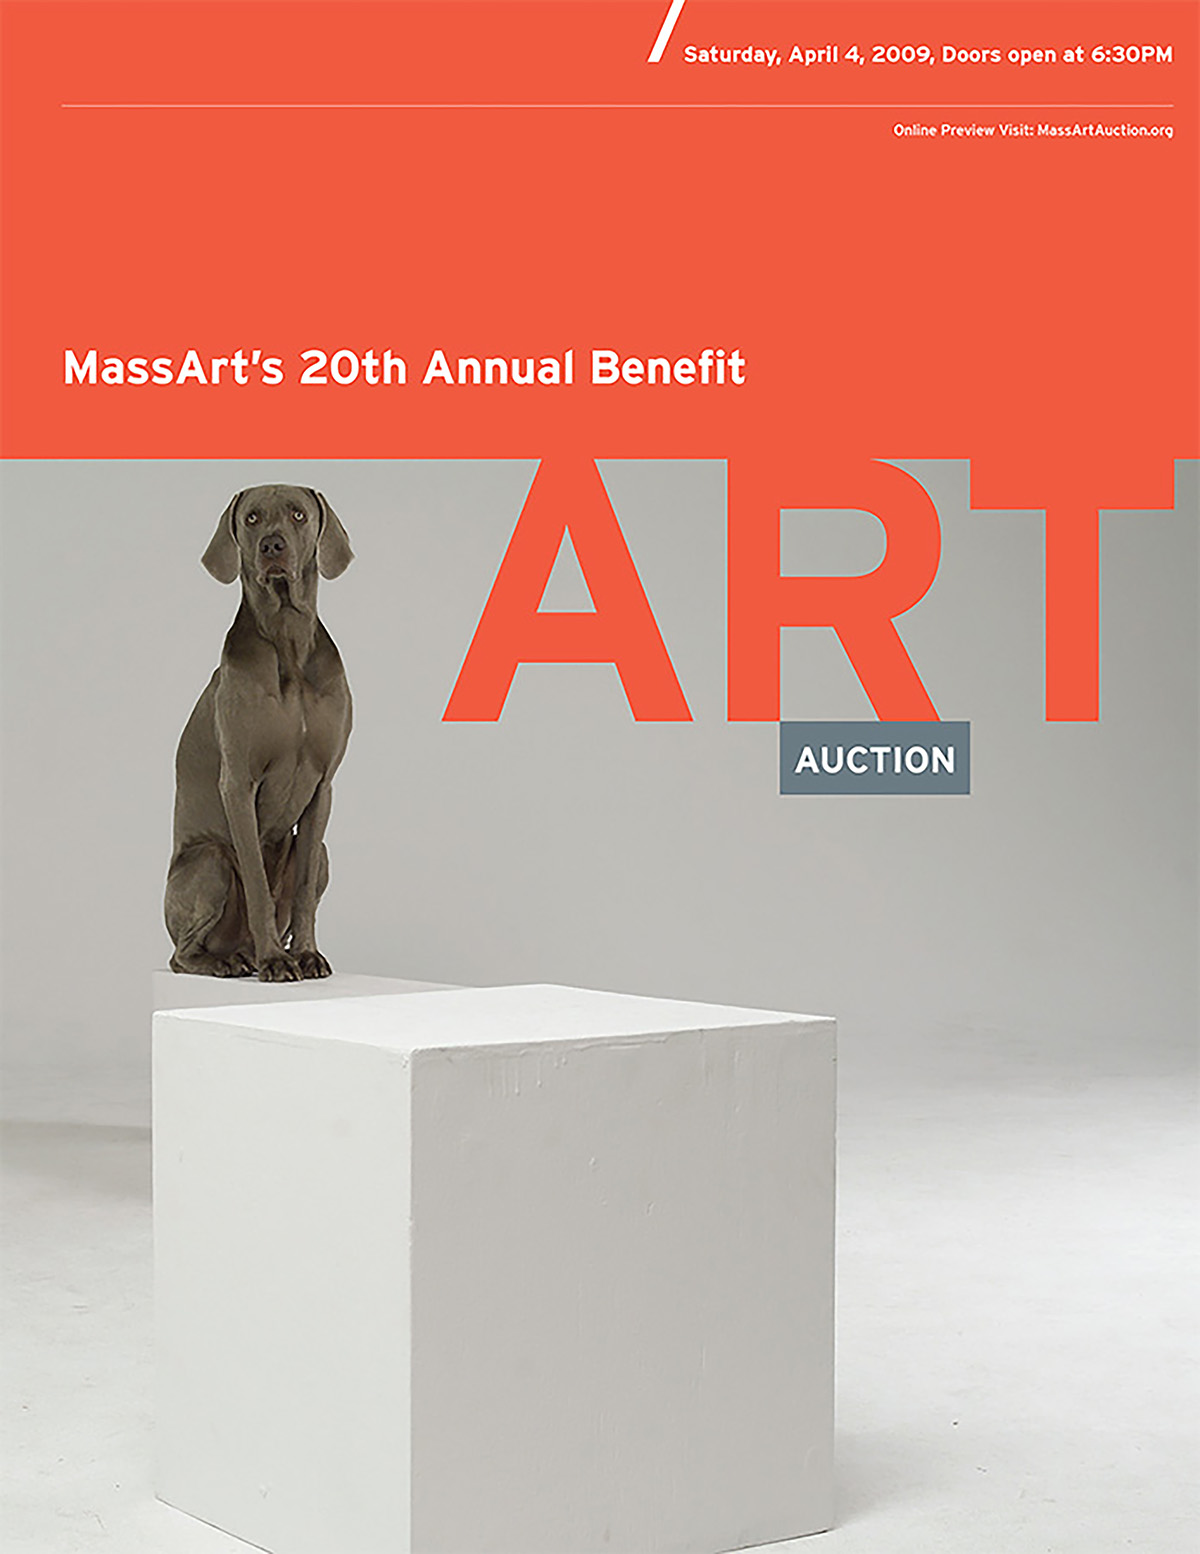 MassArt Art Auction Branding and Design for the MassArt Foundation